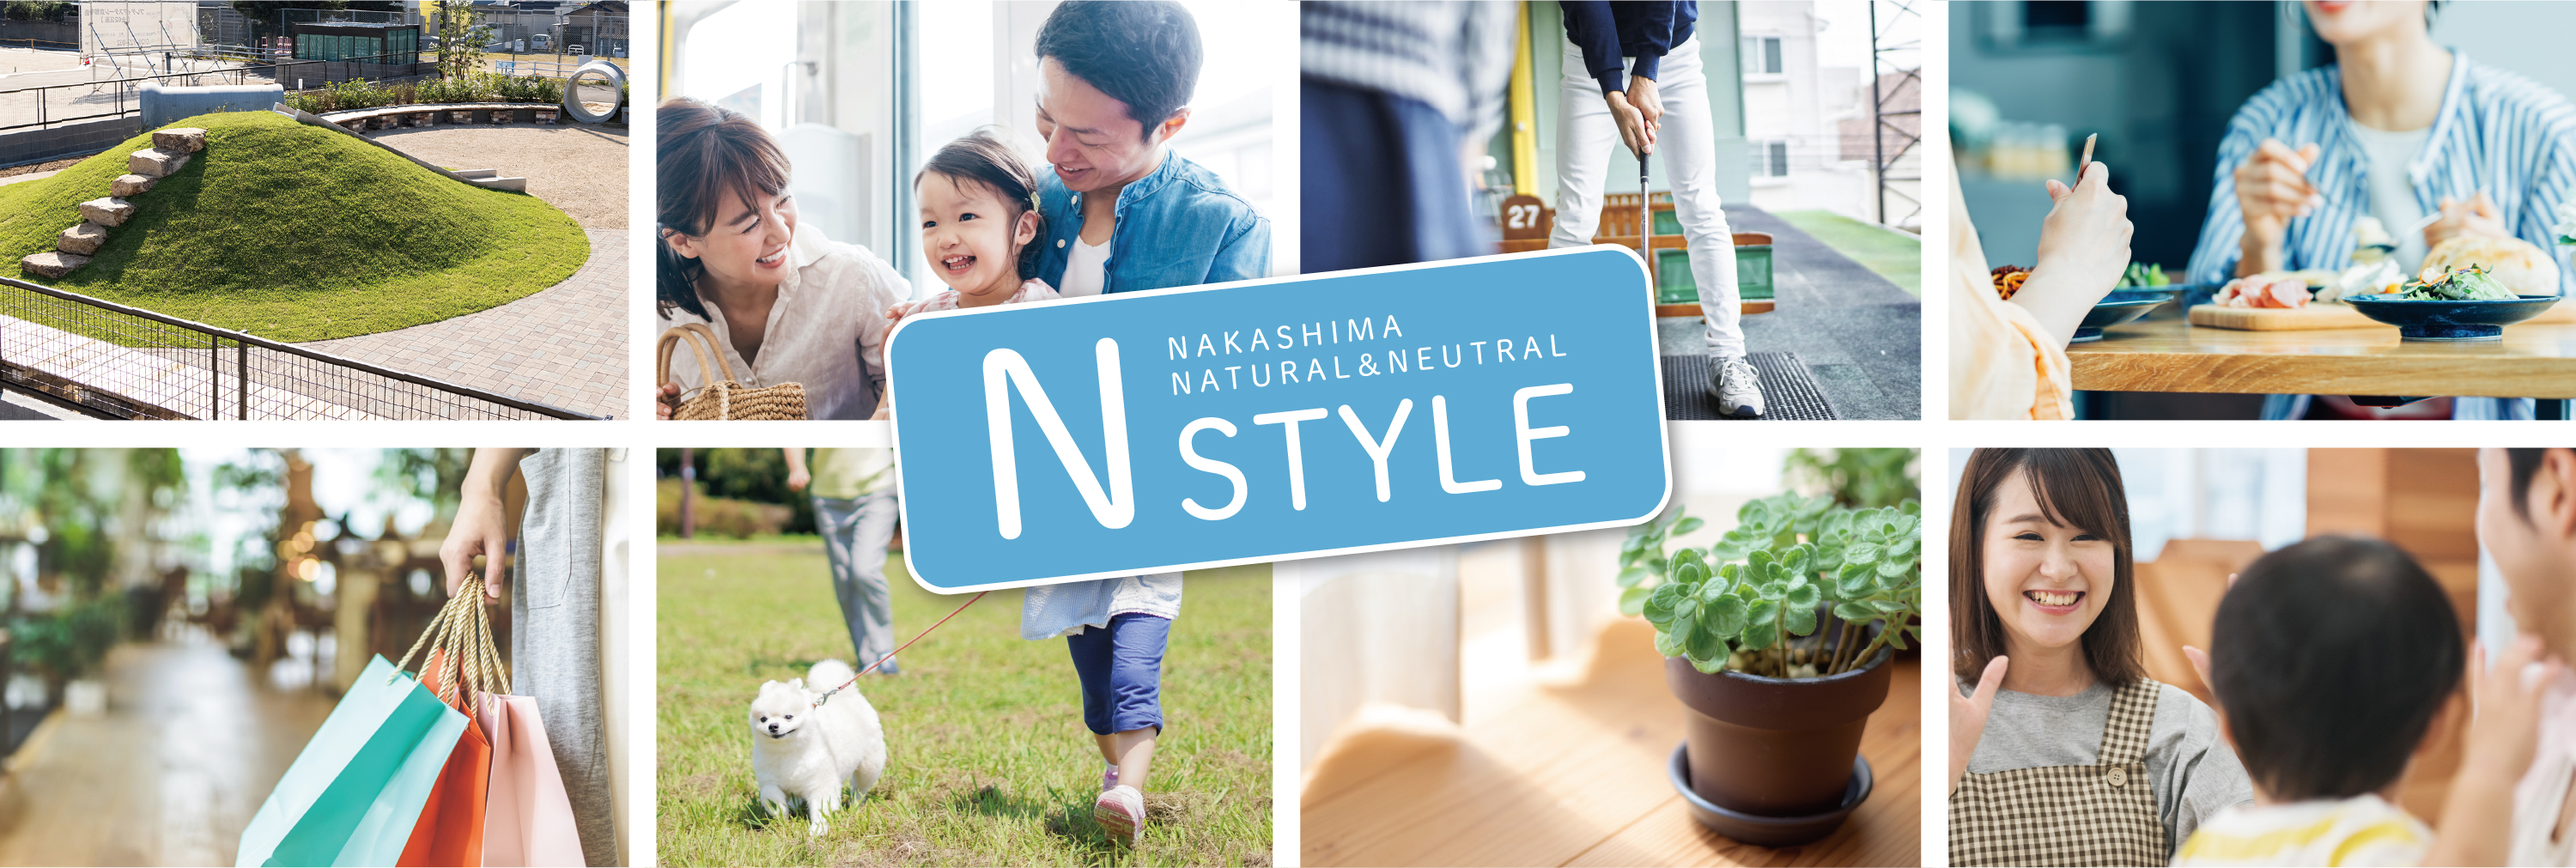 N STYLE NAKASHIMA NATURAL&NEUTRAL